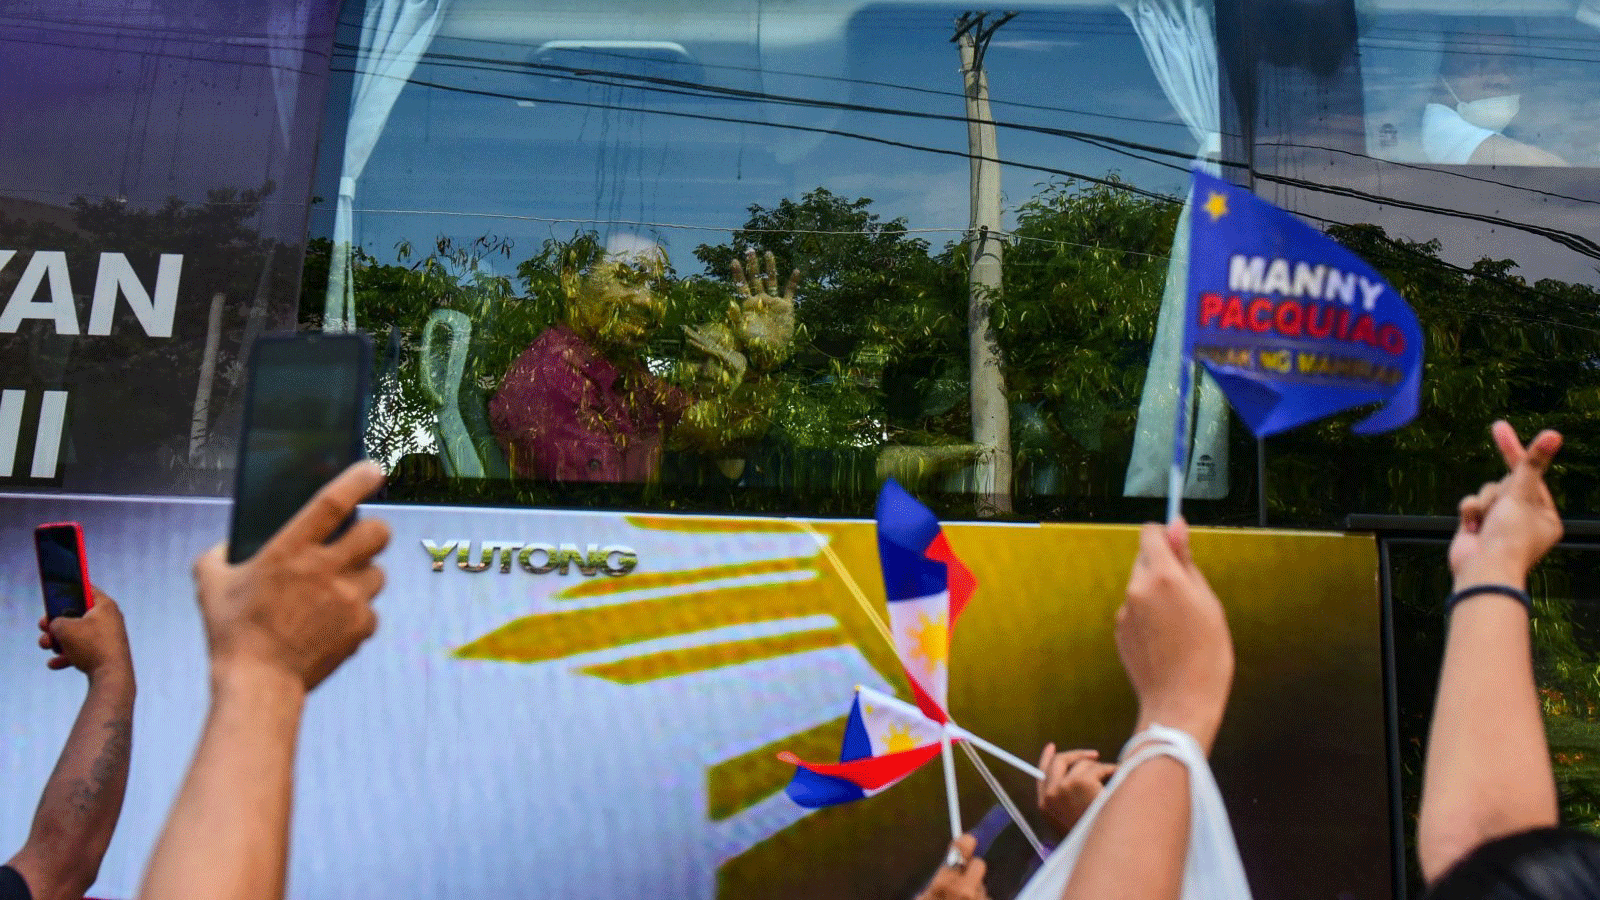 رمز الملاكمة والسناتور الفلبيني ماني باكياو يلوّح لأنصاره عند وصوله في حافلة لتقديم شهادة ترشيحه لرئاسة الفيلبين في مانيلا في الأول تشرين الأول/ أكتوبر 2021